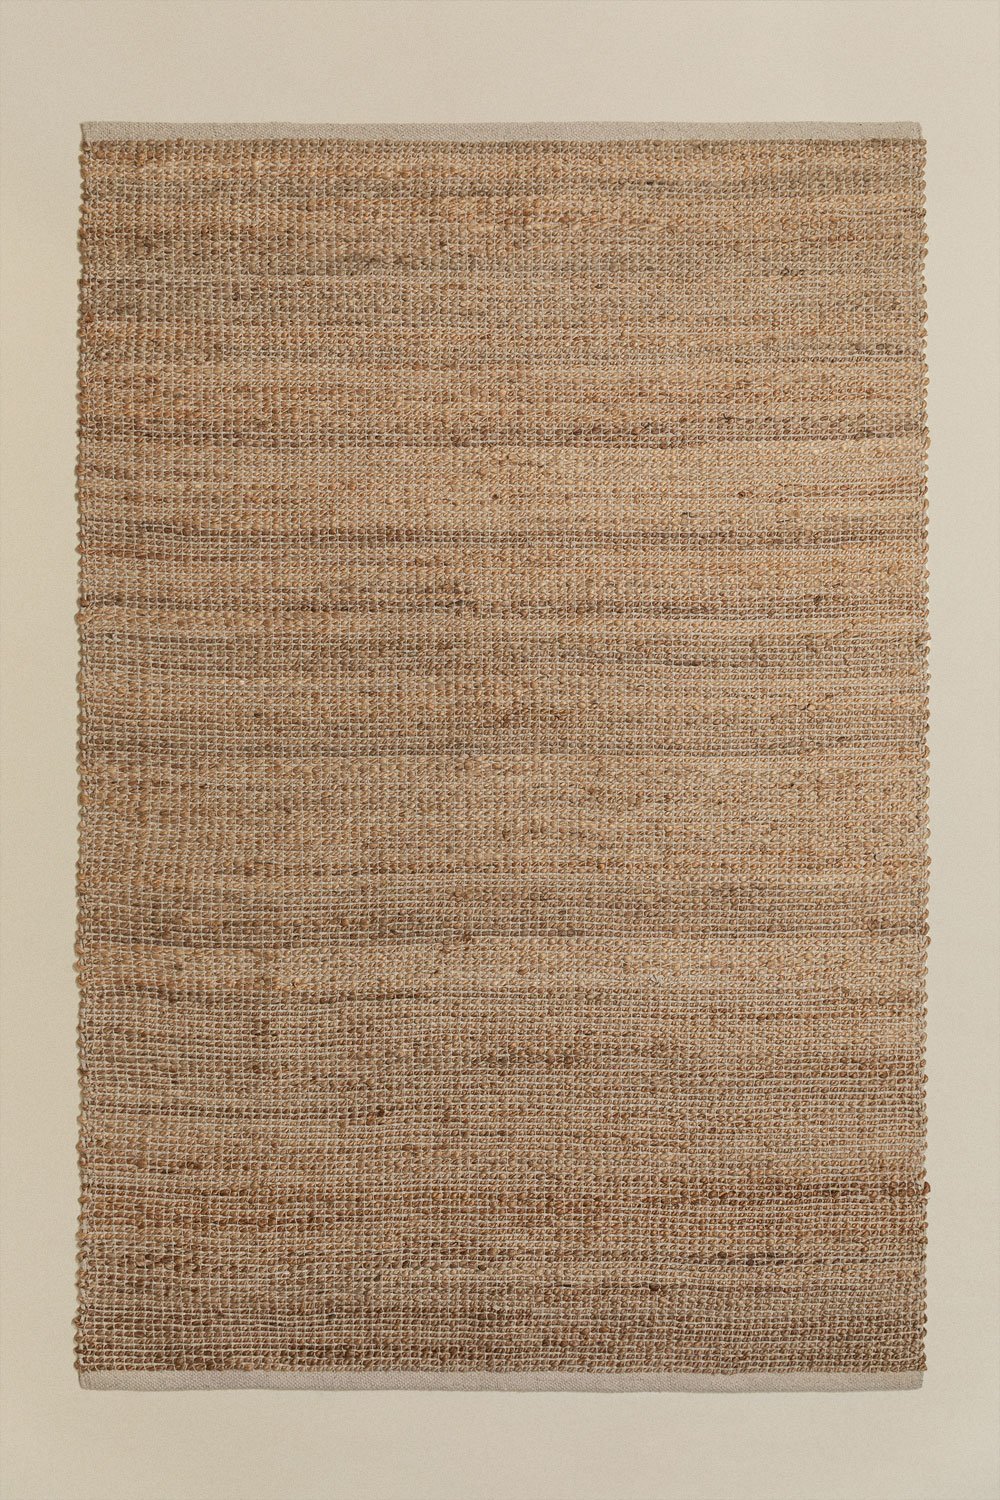 Tappeto in iuta (180x120 cm) Casard, immagine della galleria 1